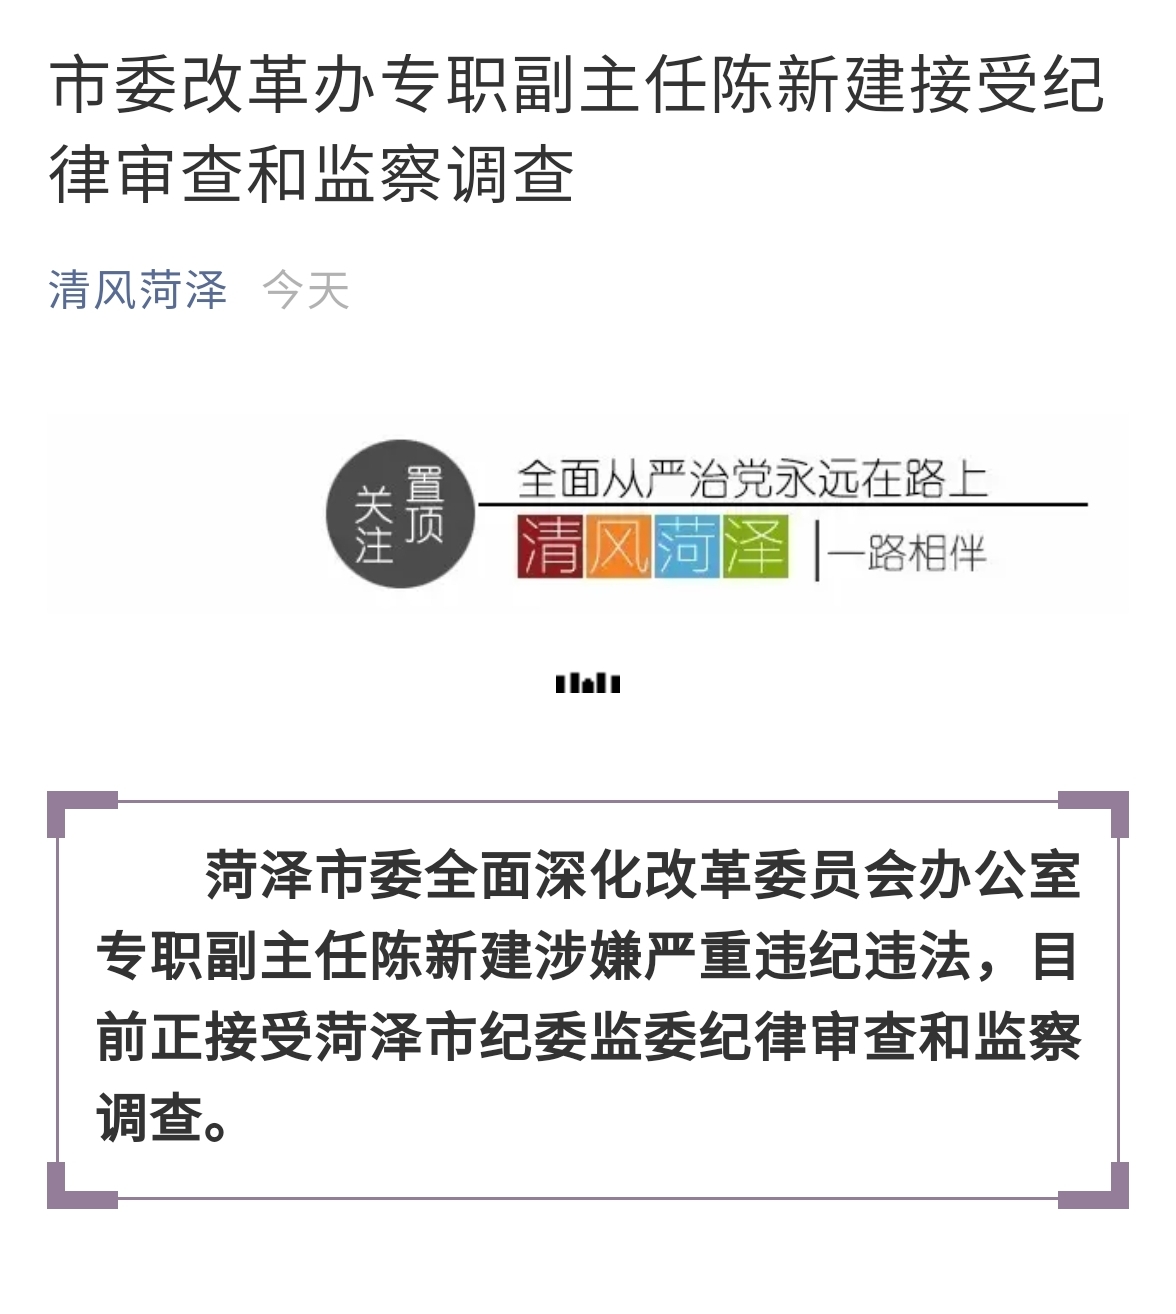 菏泽市委改革办专职副主任陈新建接受纪律审查和监察调查